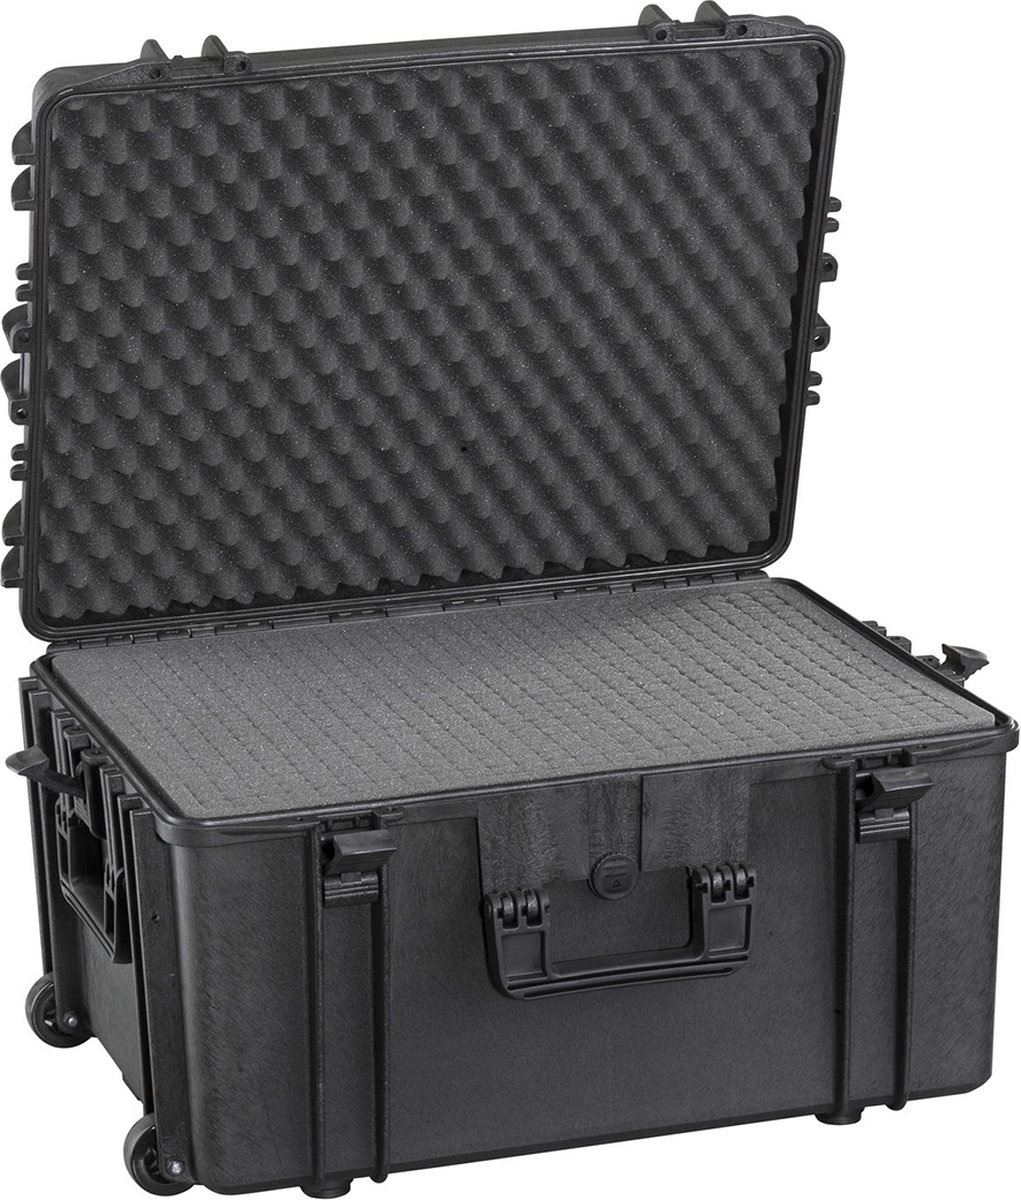 Gaffergear camera koffer 062H zwart trolley uitvoering incl. plukschuim - 52,800000 x 37,600000 x 37,600000 cm (BxDxH)